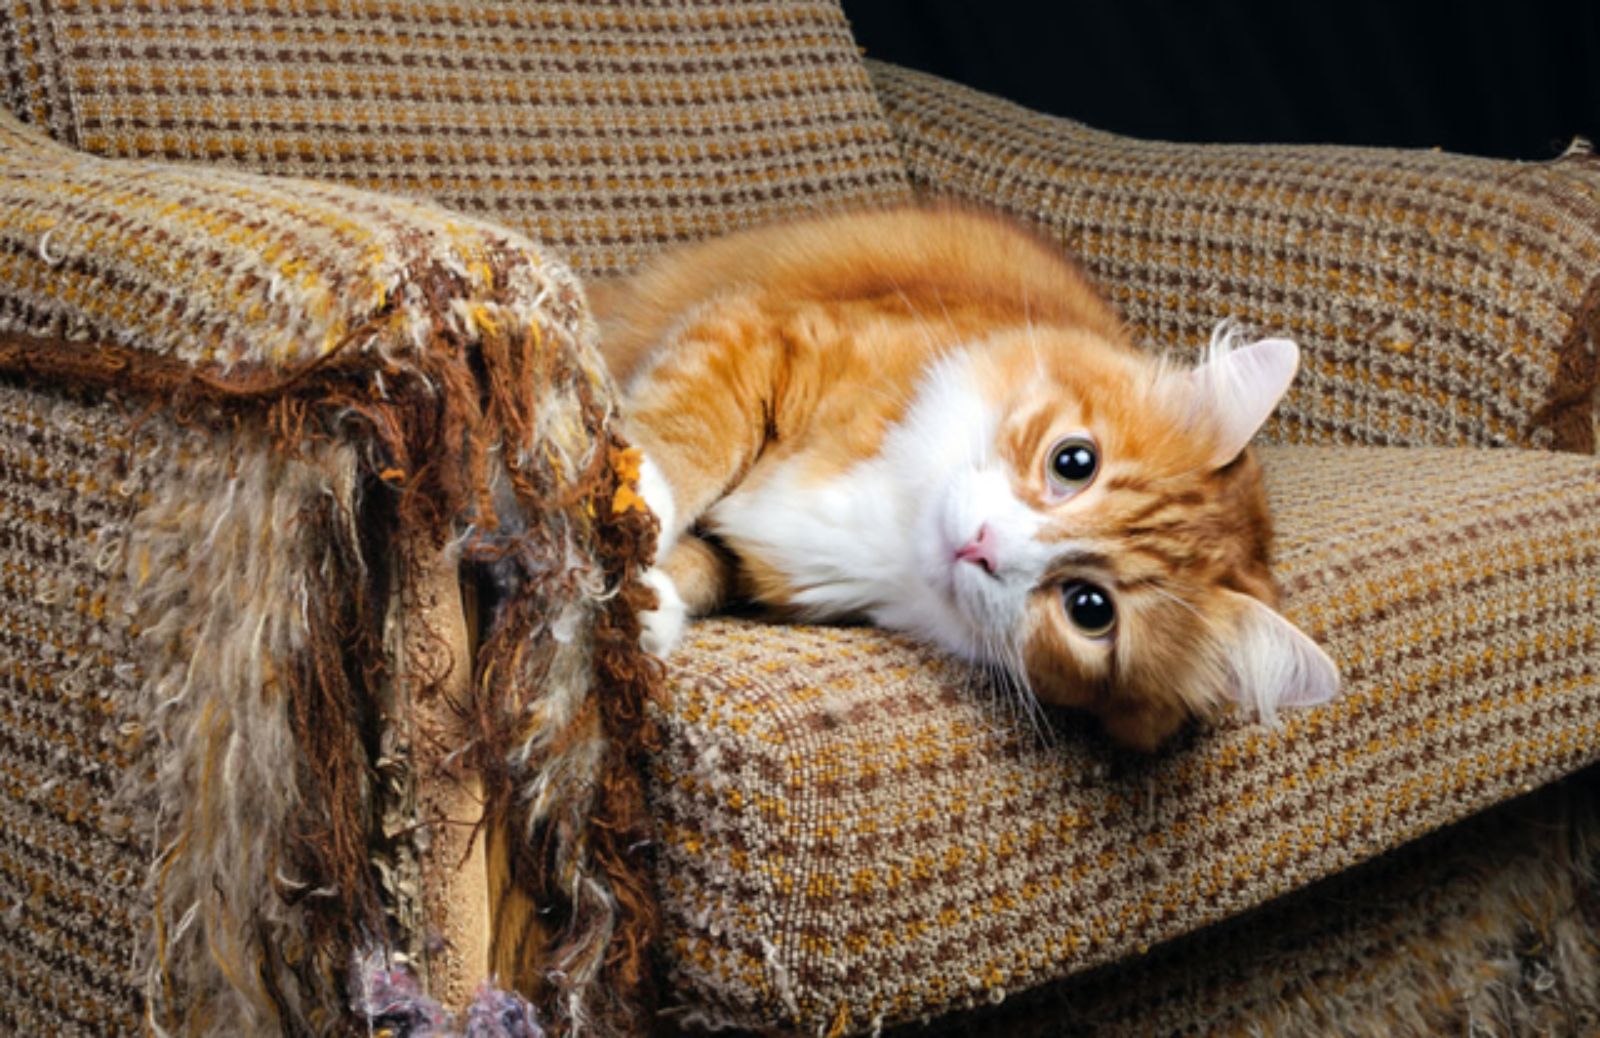 I 5 trucchi per impedire al gatto di farsi le unghie sul divano